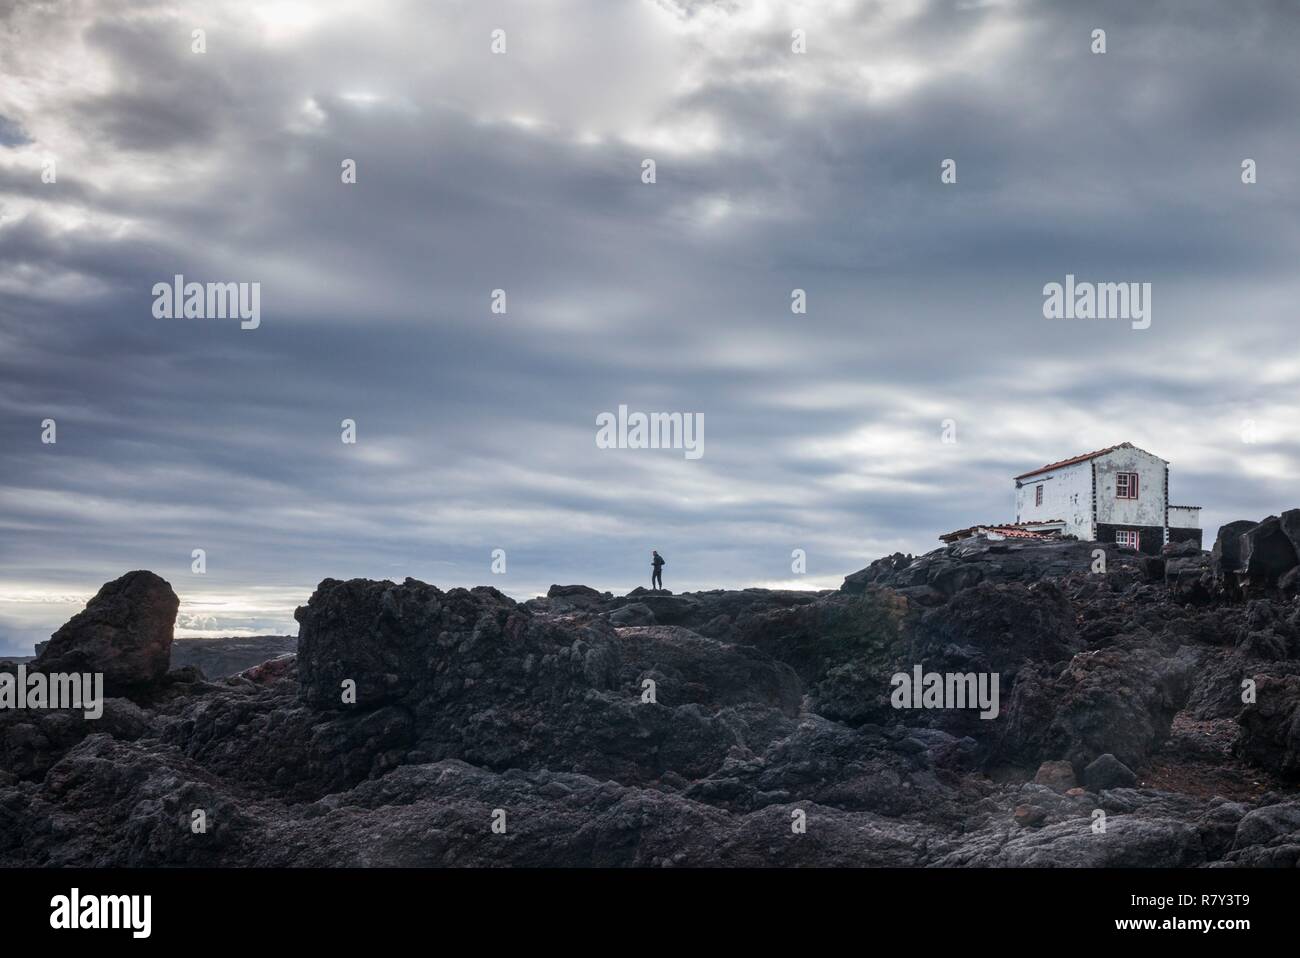 Le Portugal, Açores, l'île de Pico, Lajido, figure solitaire dans un paysage volcanique Banque D'Images